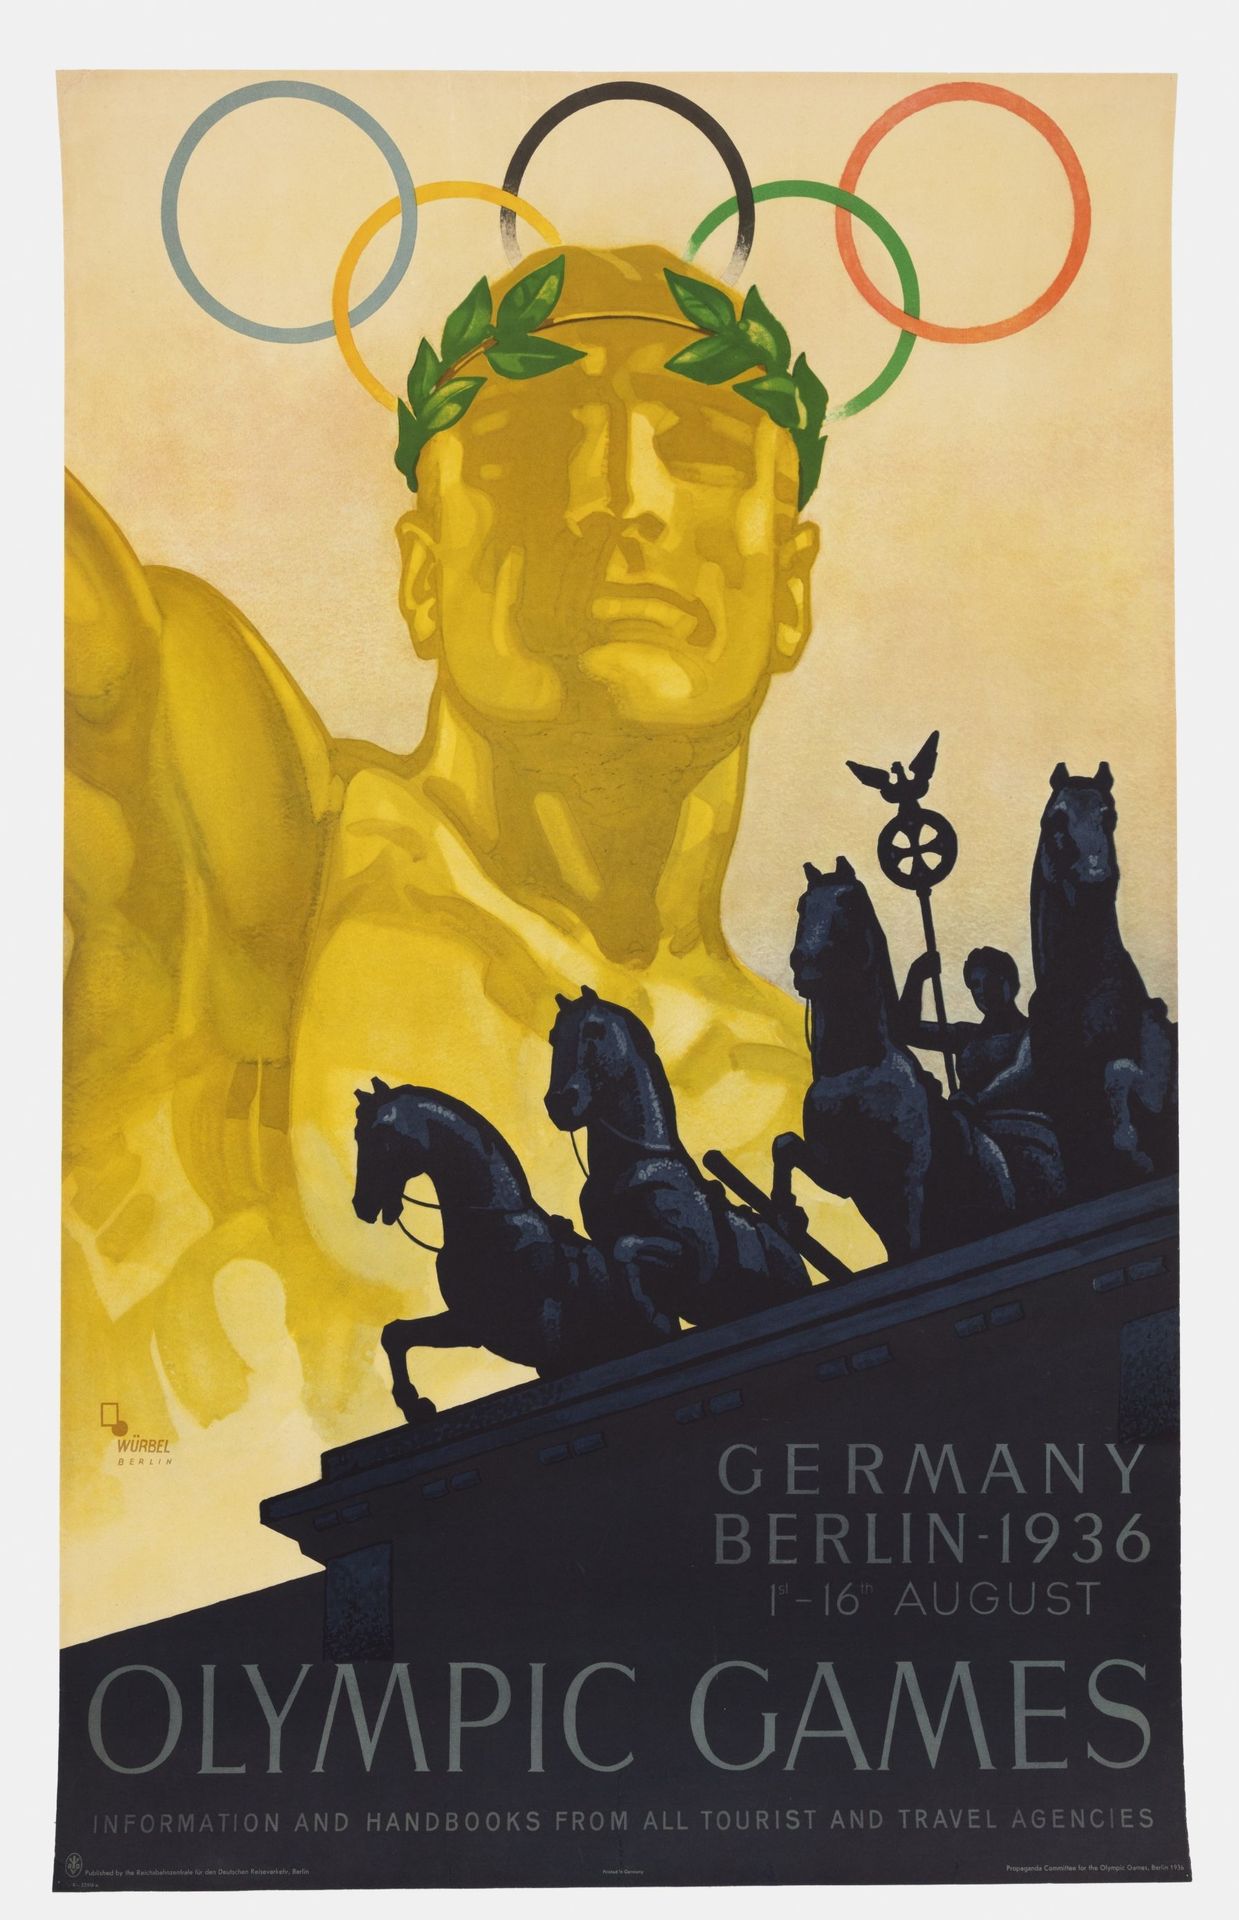 Les tristement célèbres Jeux olympiques de 1936 à Berlin - Franz Theodor Würbel - 1936
